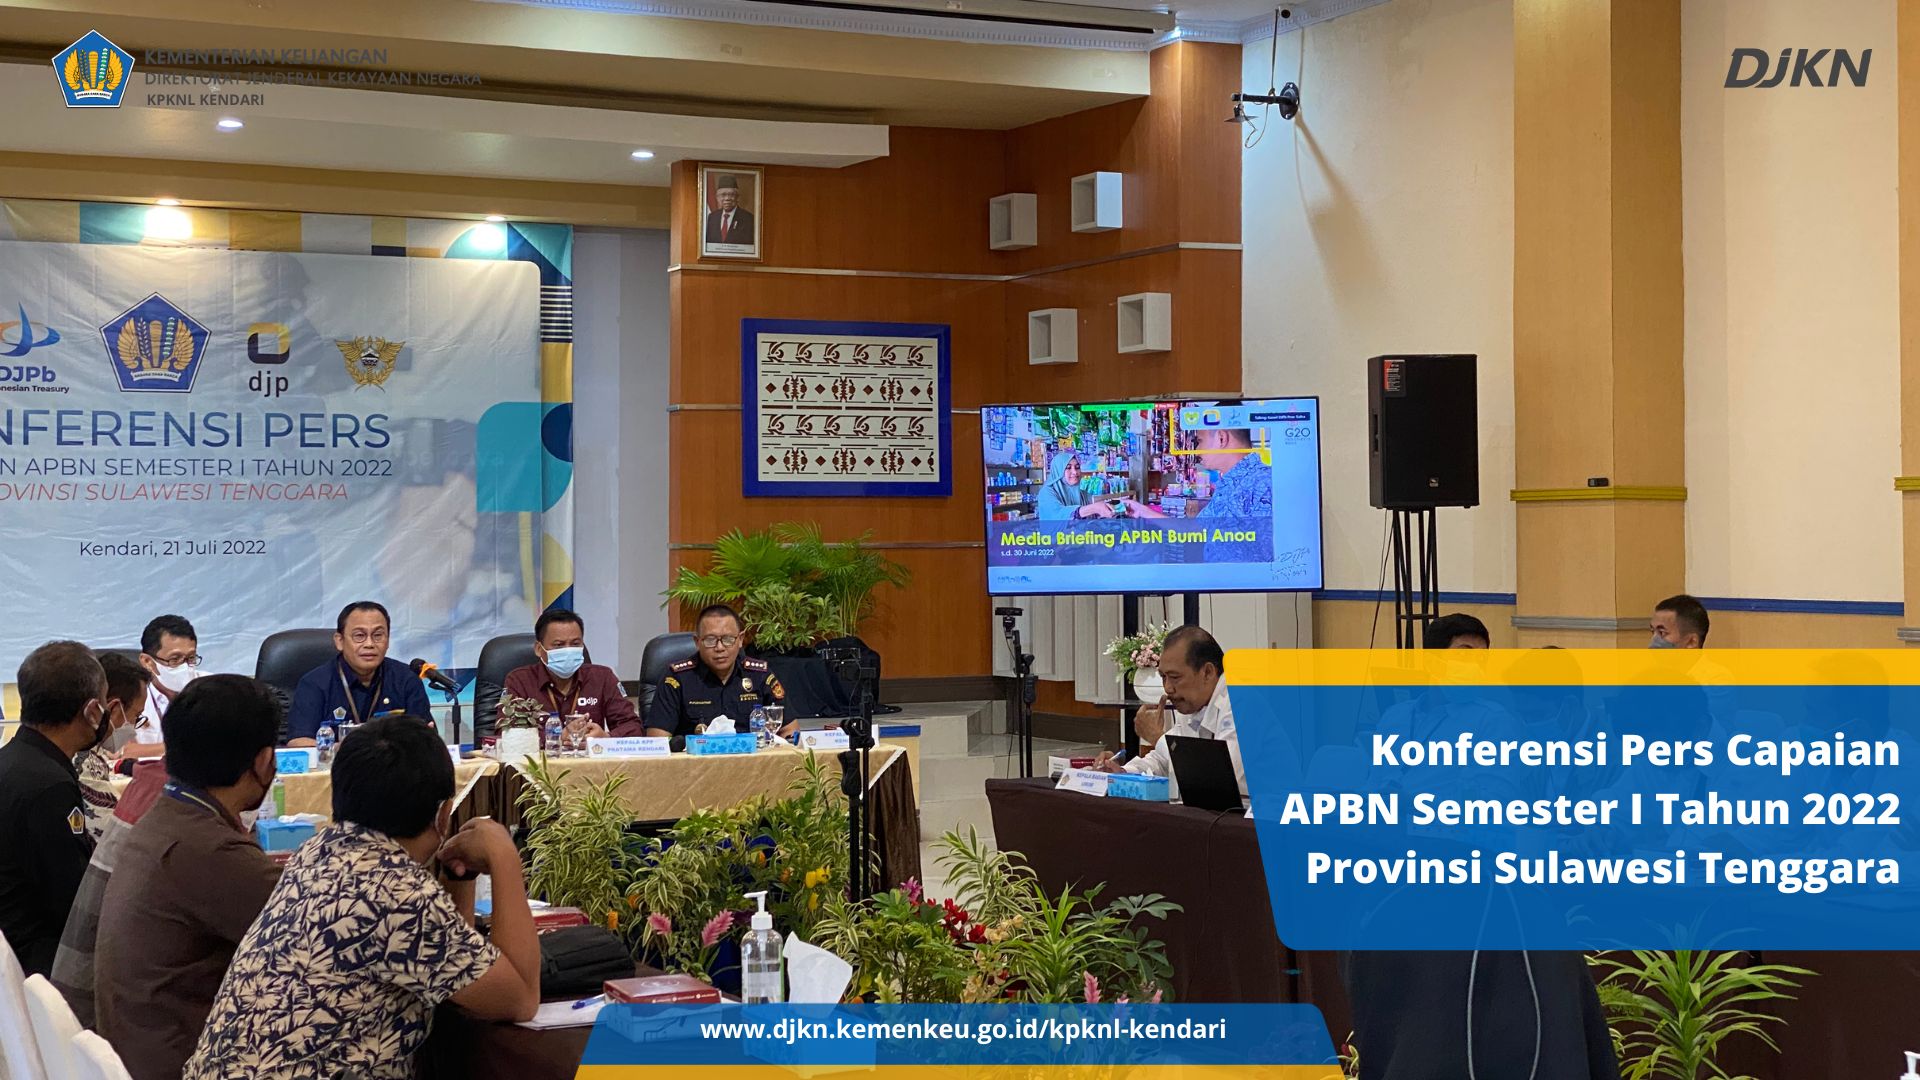 Kementerian Keuangan Sulawesi Tenggara Rilis Kinerja APBN Triwulan II Tahun 2022